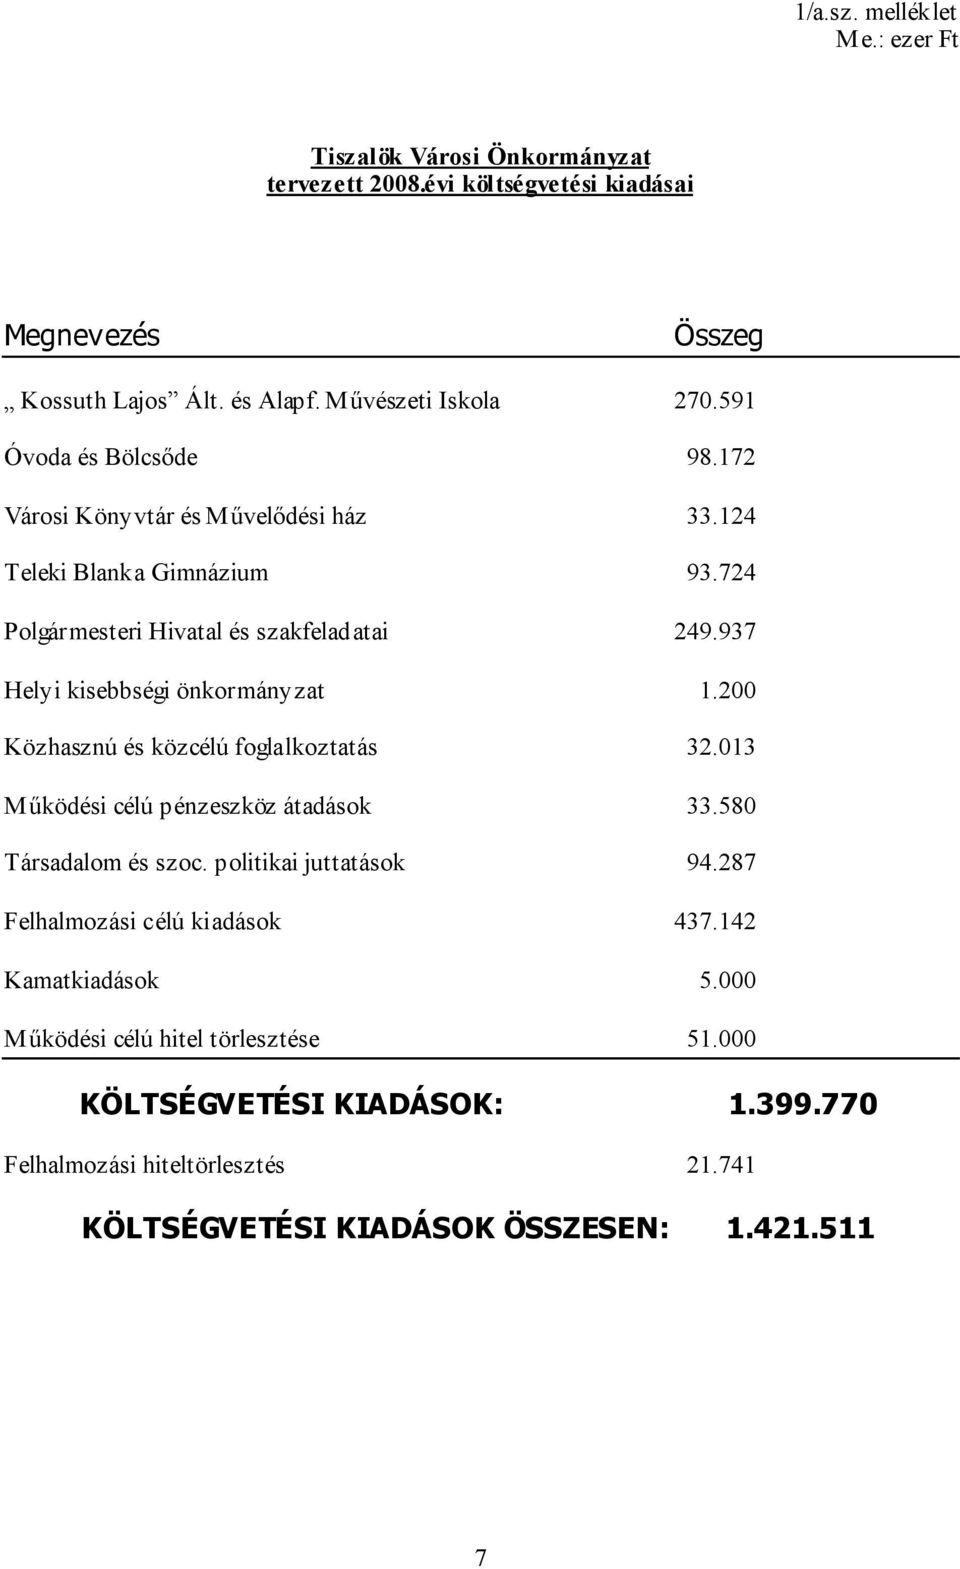 937 Helyi kisebbségi önkormányzat 1.200 Közhasznú és közcélú foglalkoztatás 32.013 Működési célú pénzeszköz átadások 33.580 Társadalom és szoc. politikai juttatások 94.